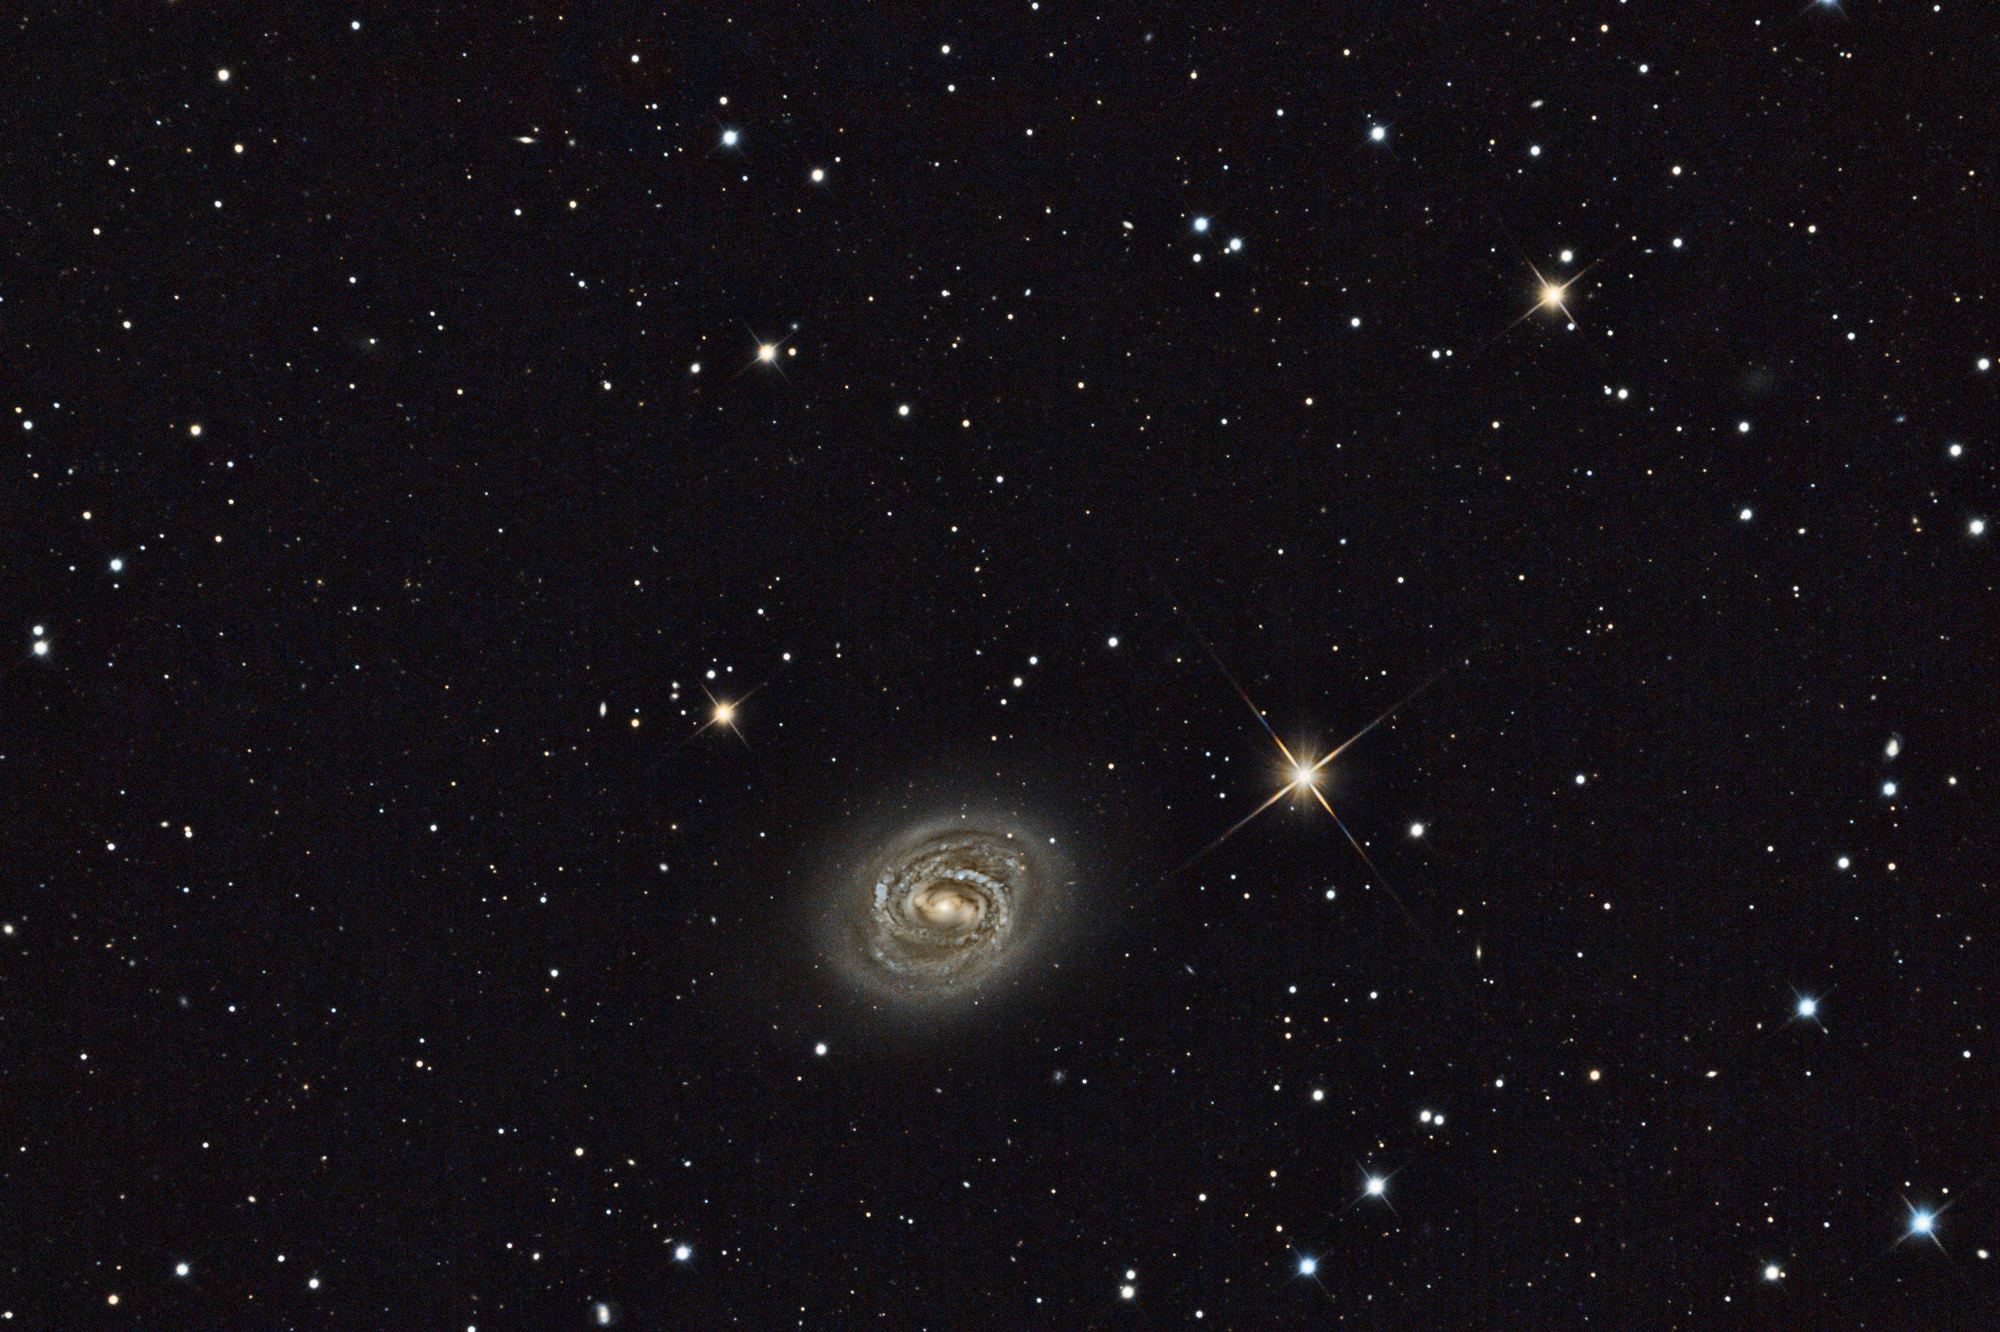 M58/NGC4579 